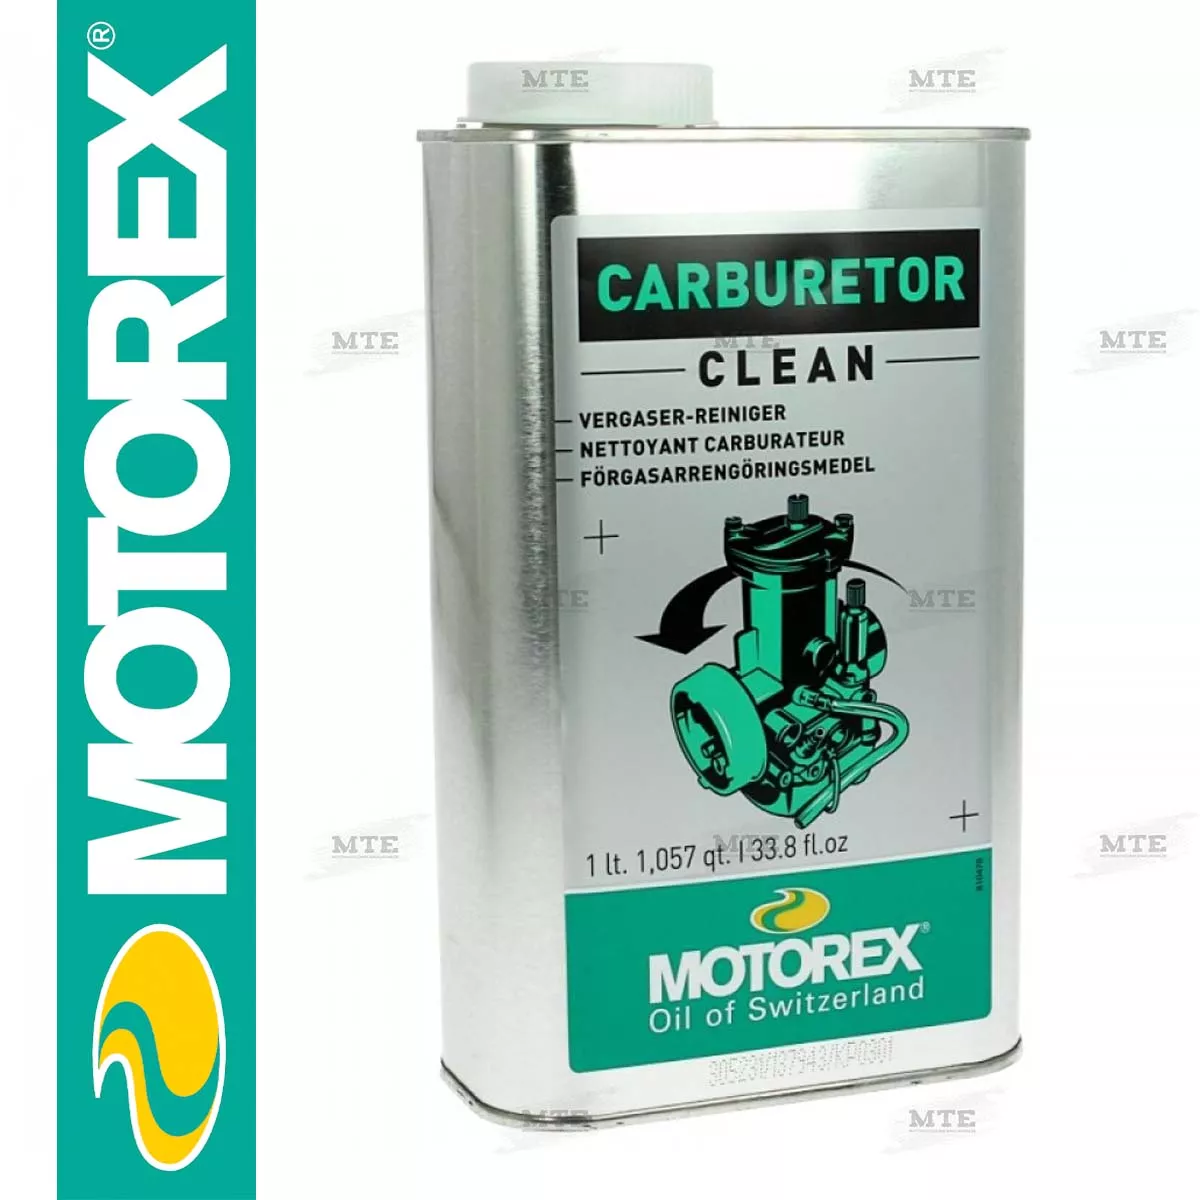 Motorex Carburetor Clean Vergaser Reiniger 1L Vergaserreiniger Neue Formel